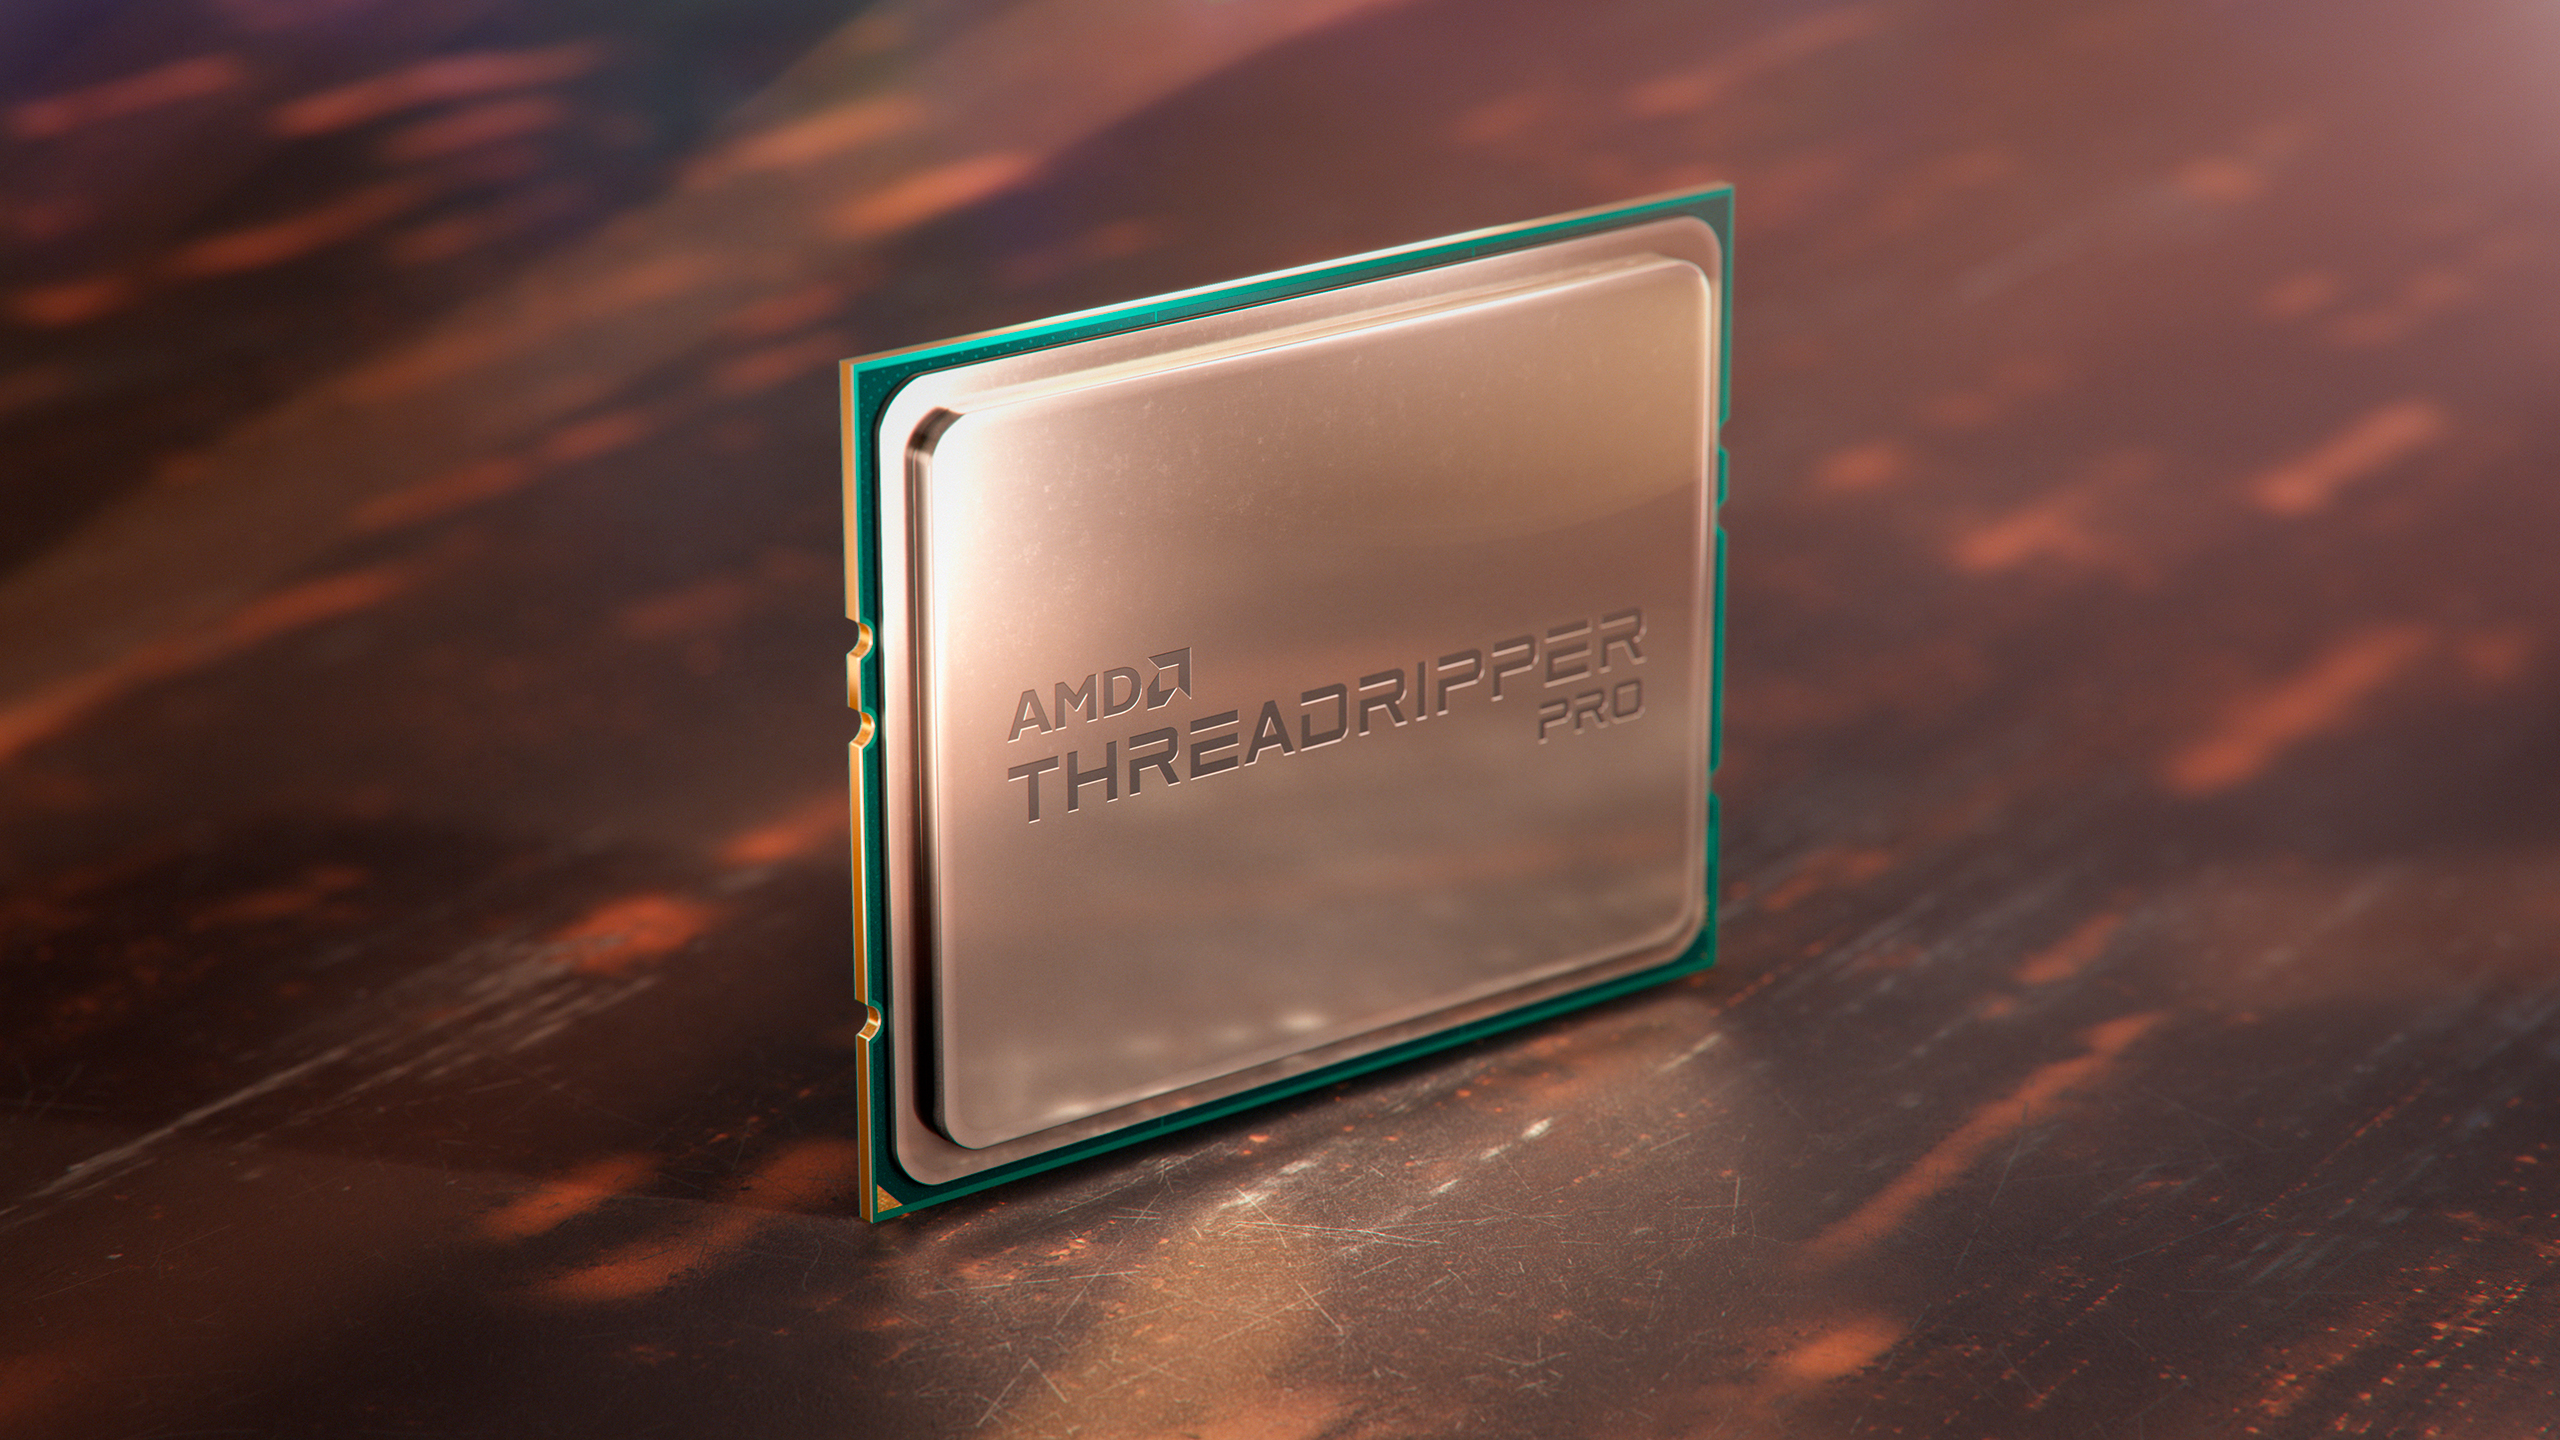 Amd threadripper pro 5995wx. Threadripper Pro 3995wx. Threadripper Pro 5995wx. Процессор AMD Ryzen Threadripper Pro 3955wx. Процессор AMD Ryzen Threadripper Pro 5995wx.